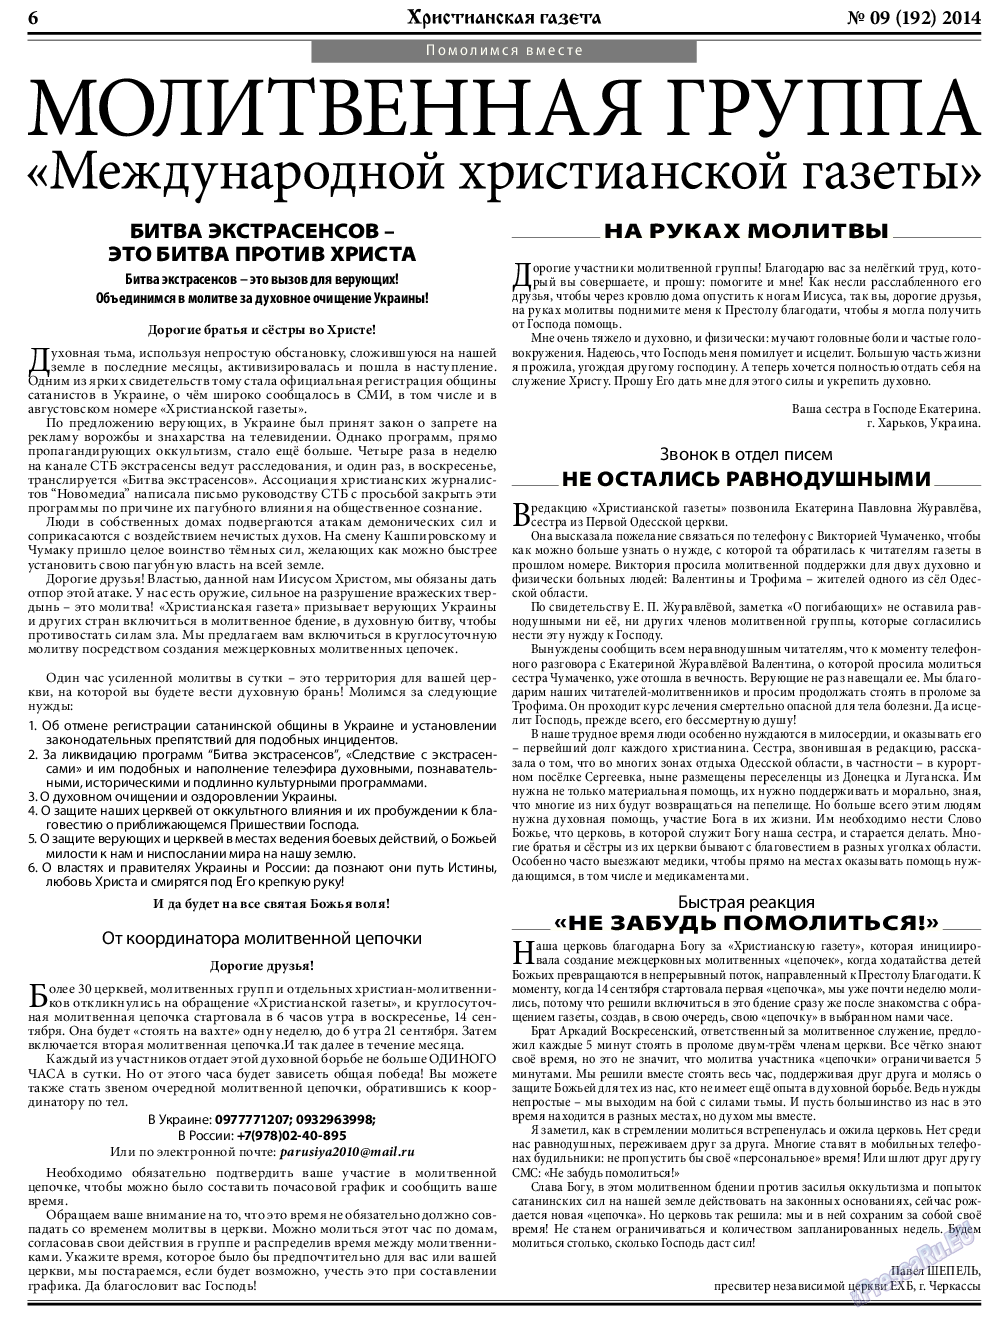 Христианская газета, газета. 2014 №9 стр.6